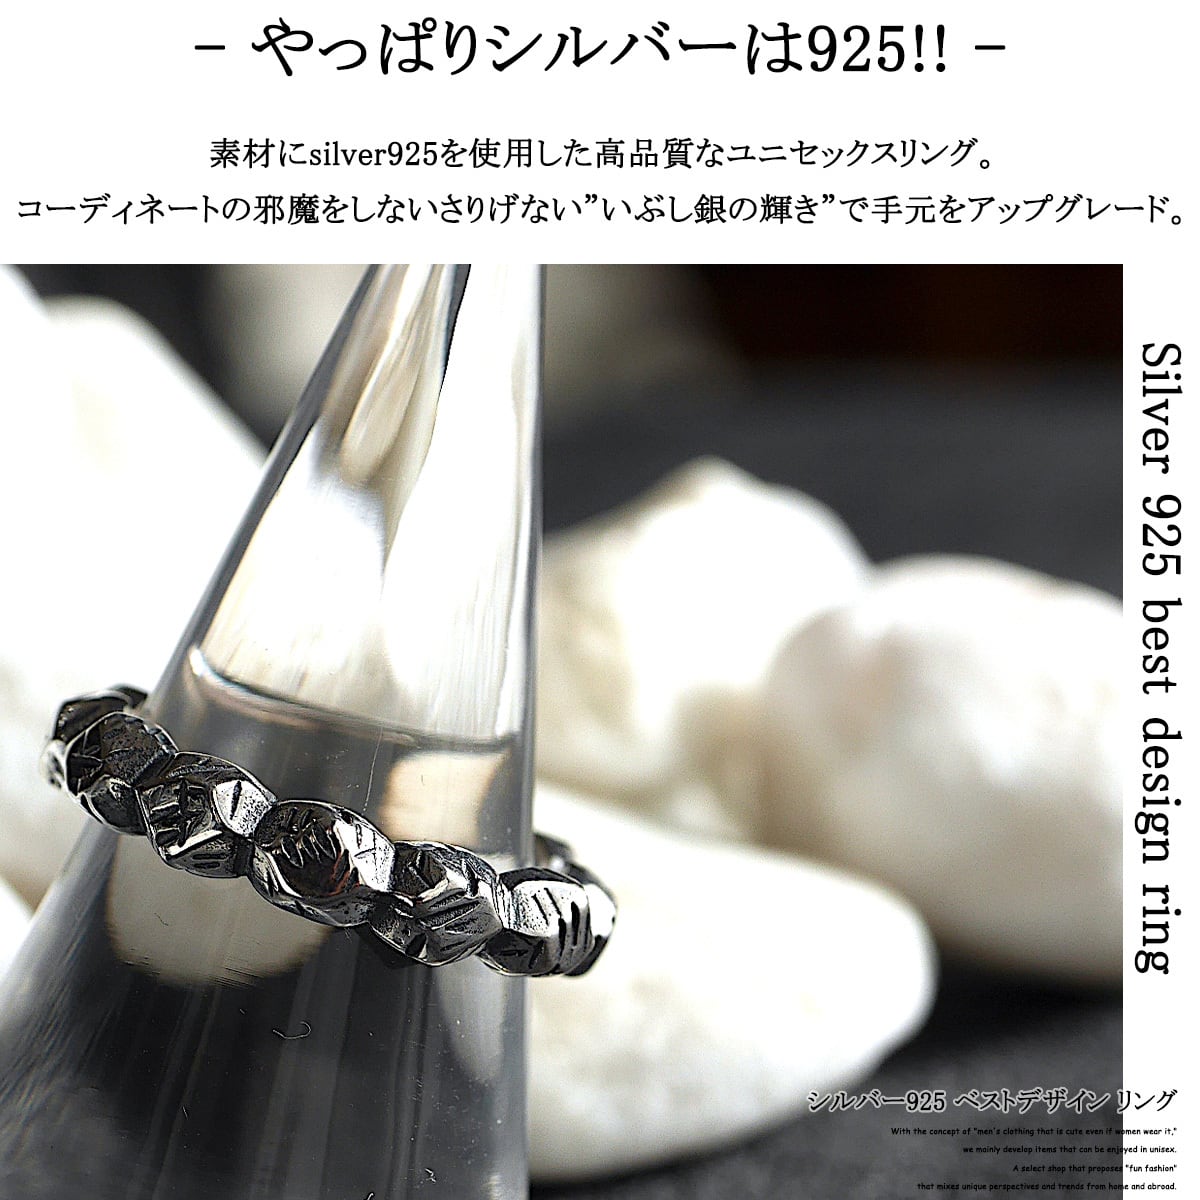 シルバー リング  フリーサイズ 指輪 ユニセックス 韓国　メンズ　レディース